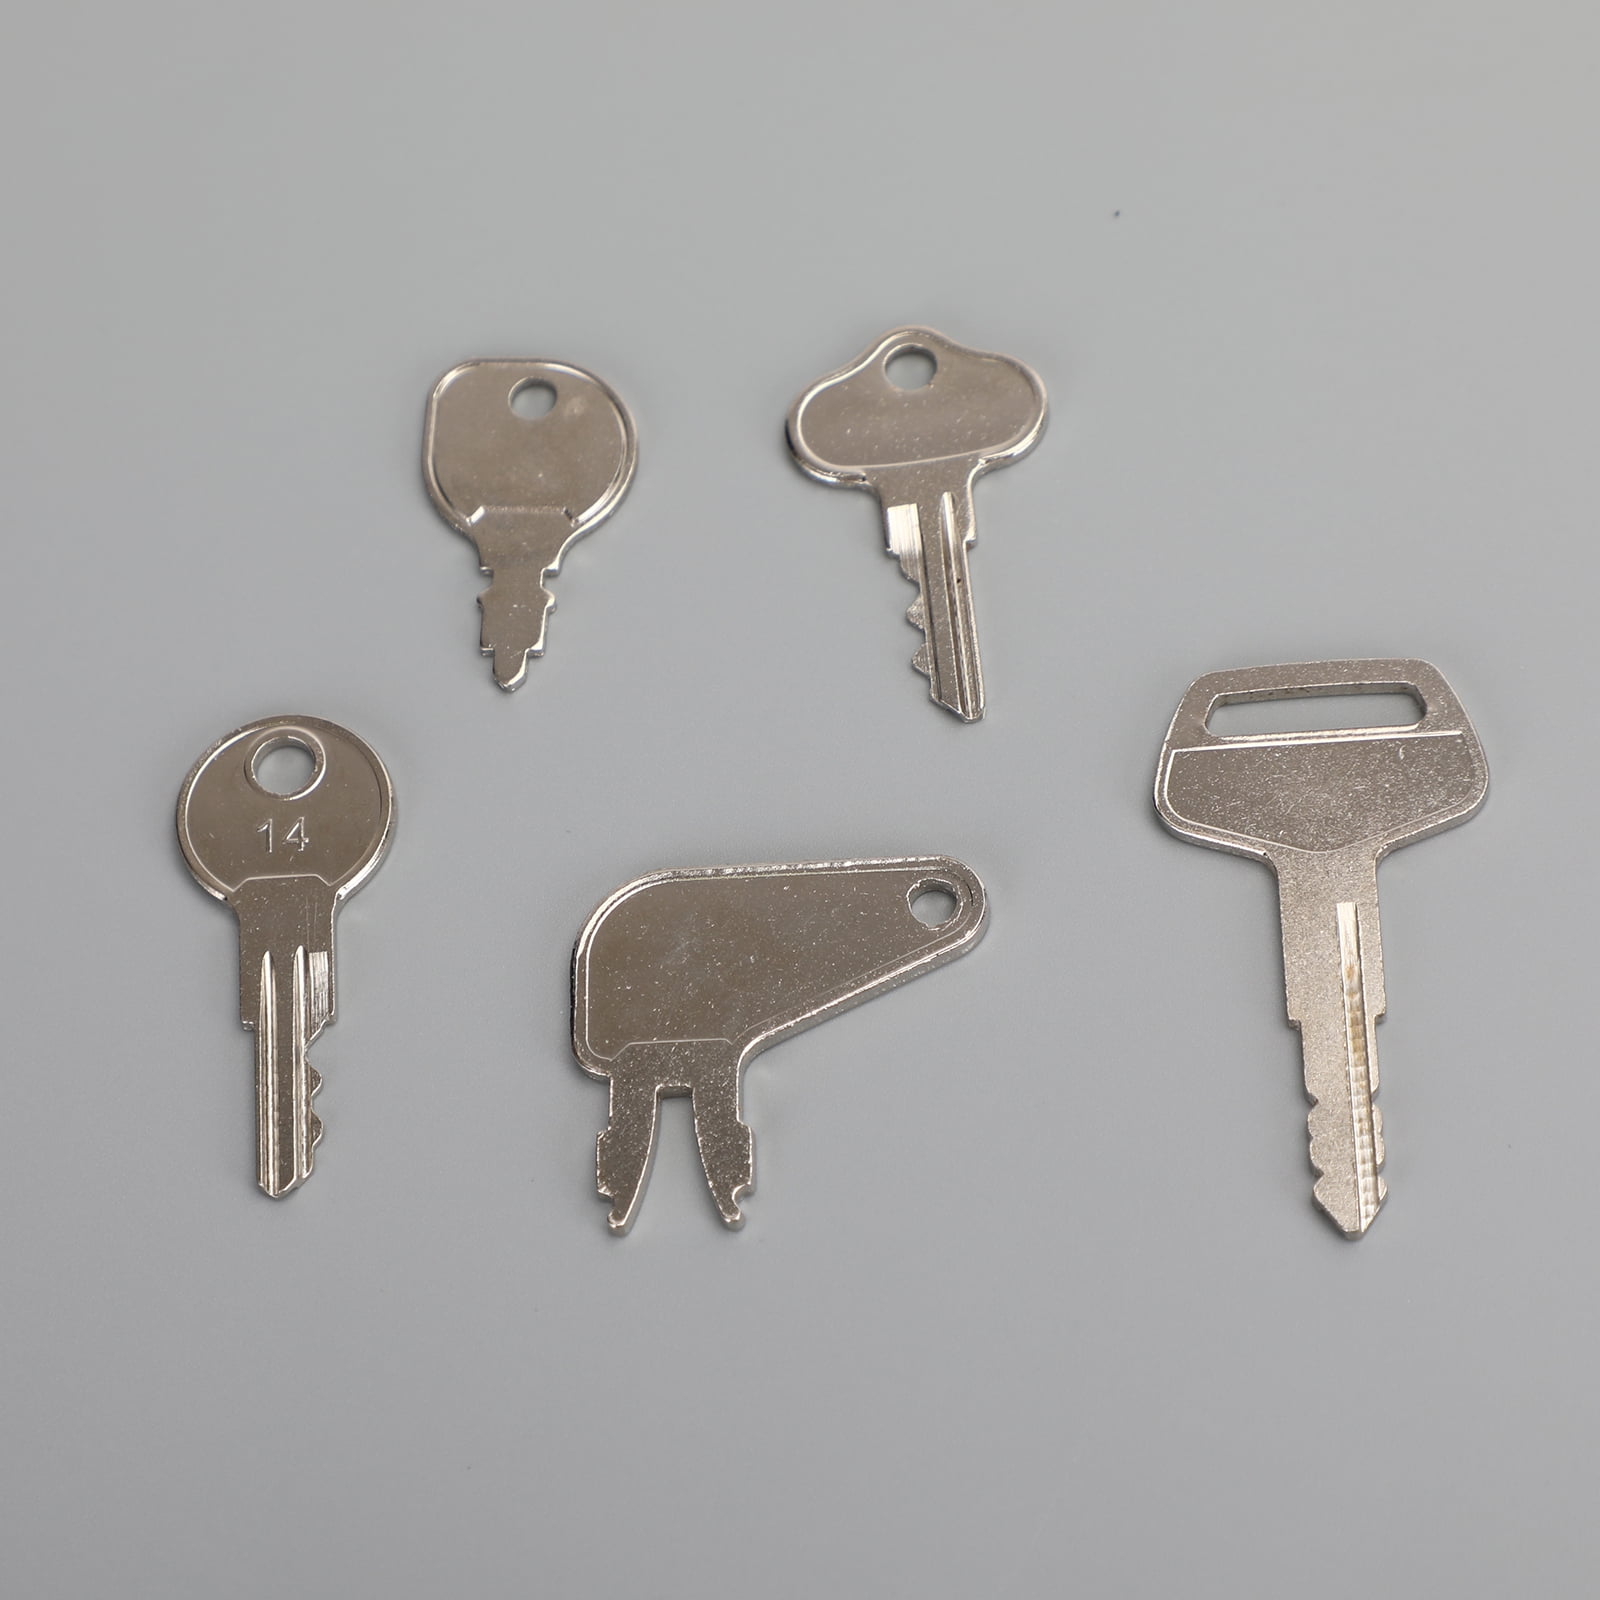 Wholesale heavy duty metal key-Buy Best heavy duty metal key lots